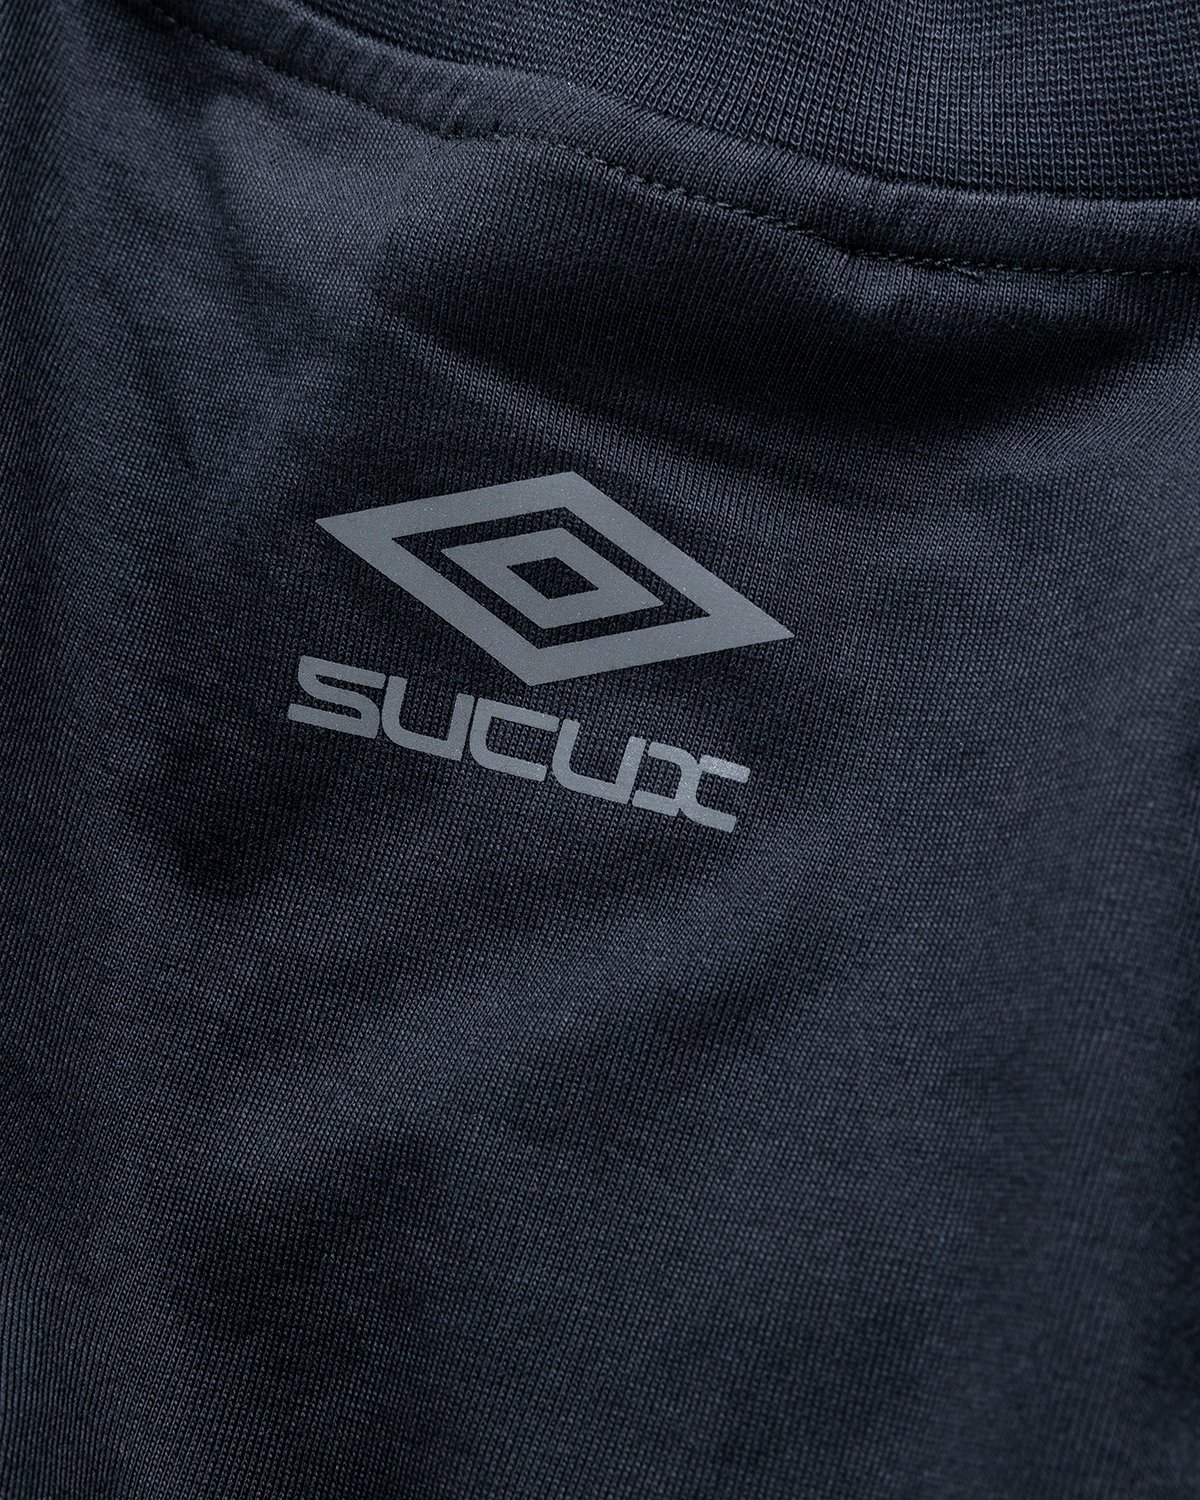 Umbro x Sucux - Oversize T-Shirt Black - Clothing - Black - Image 4